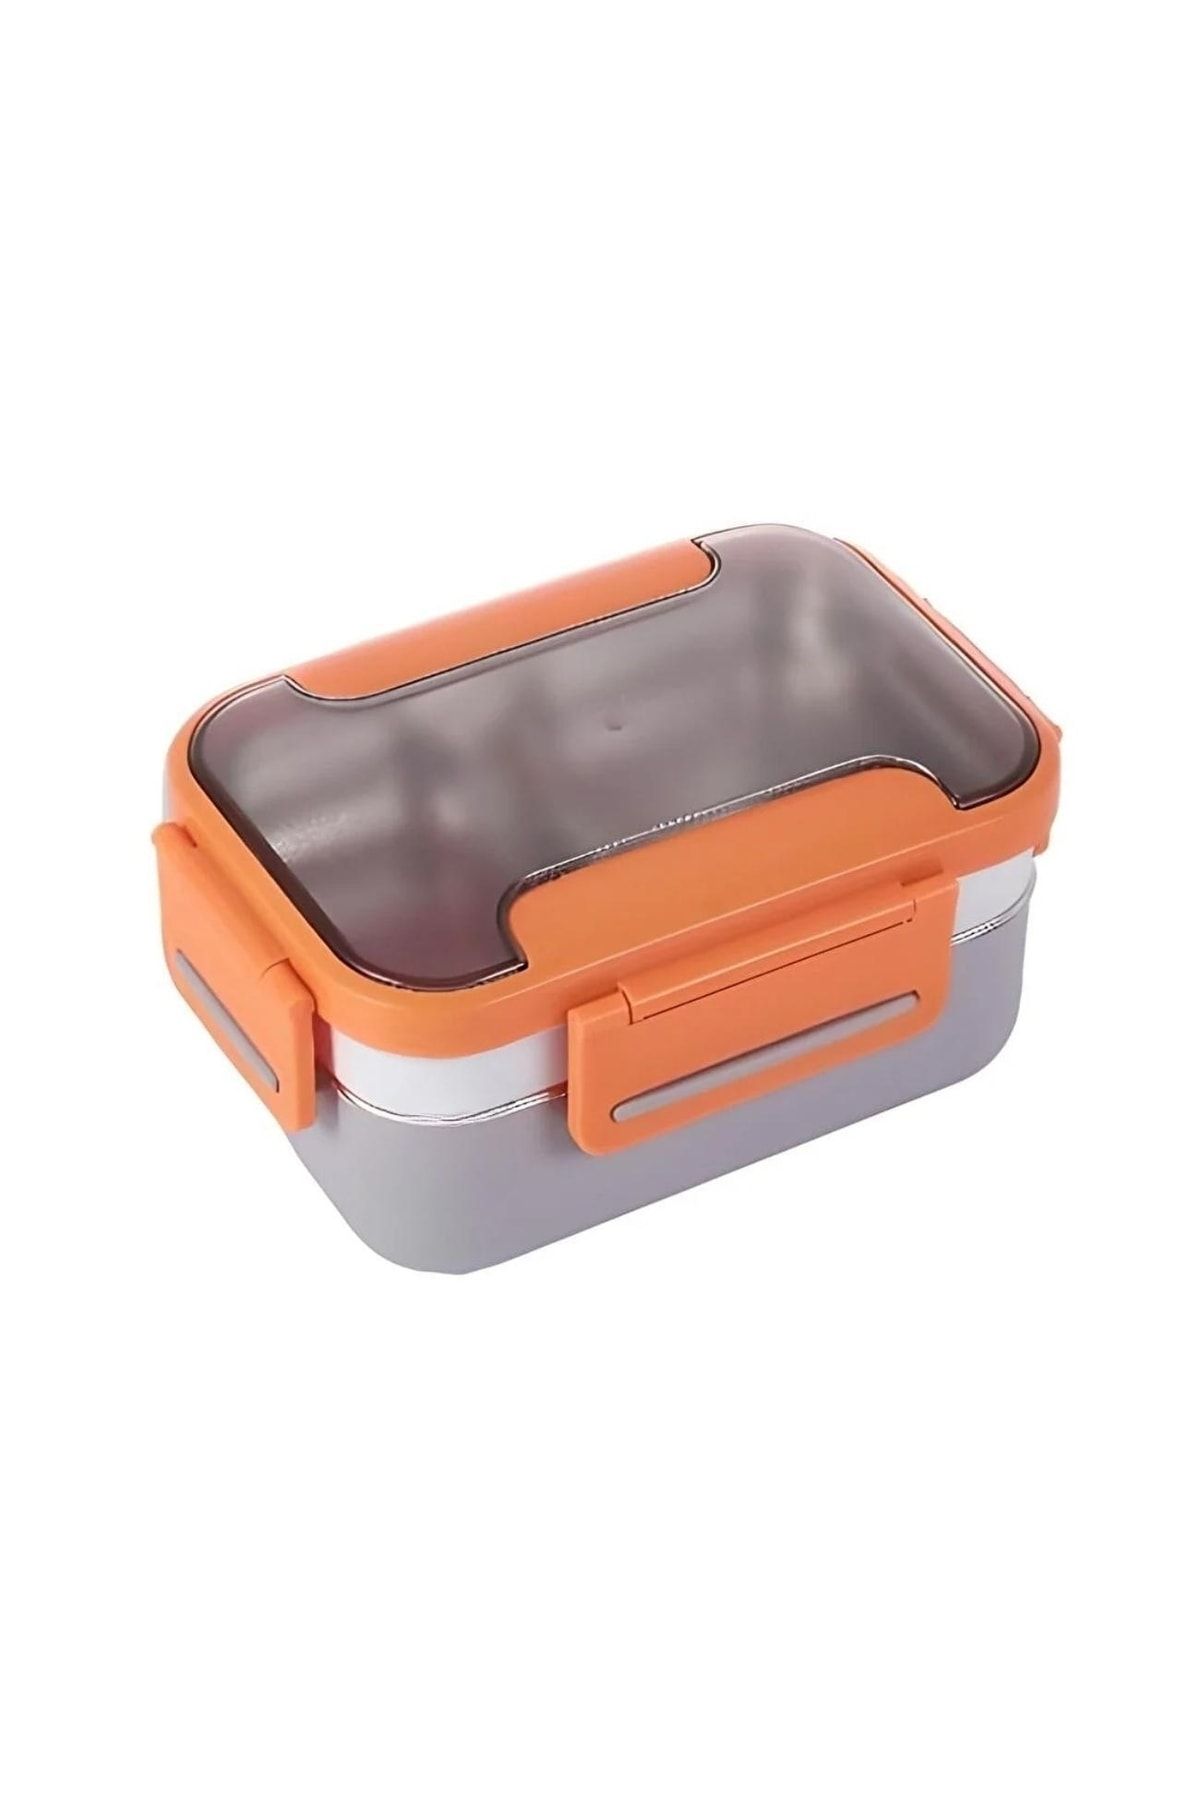 Vagonlife Bento 1200ml Çok Renkli Lunchbox Yeni Koleksiyon 2 Katlı Çelik Sefer Tası Yemek Kutusu